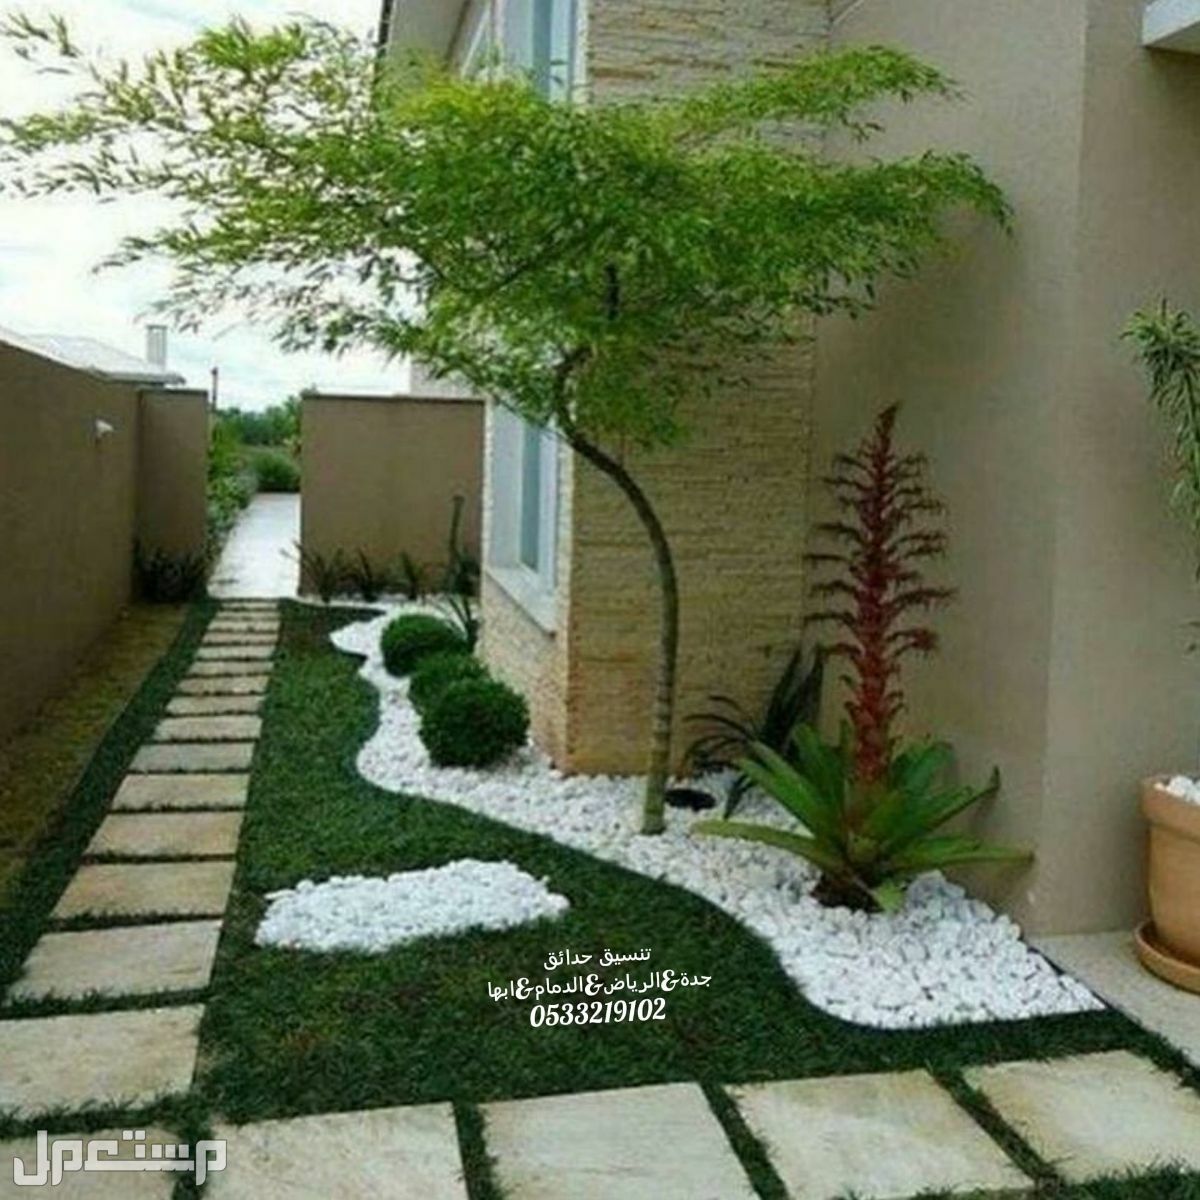 تنسيقات مودرن للحدائق المنزلية عشب صناعى السعوديه تركيب مظلات تصميم شلالات